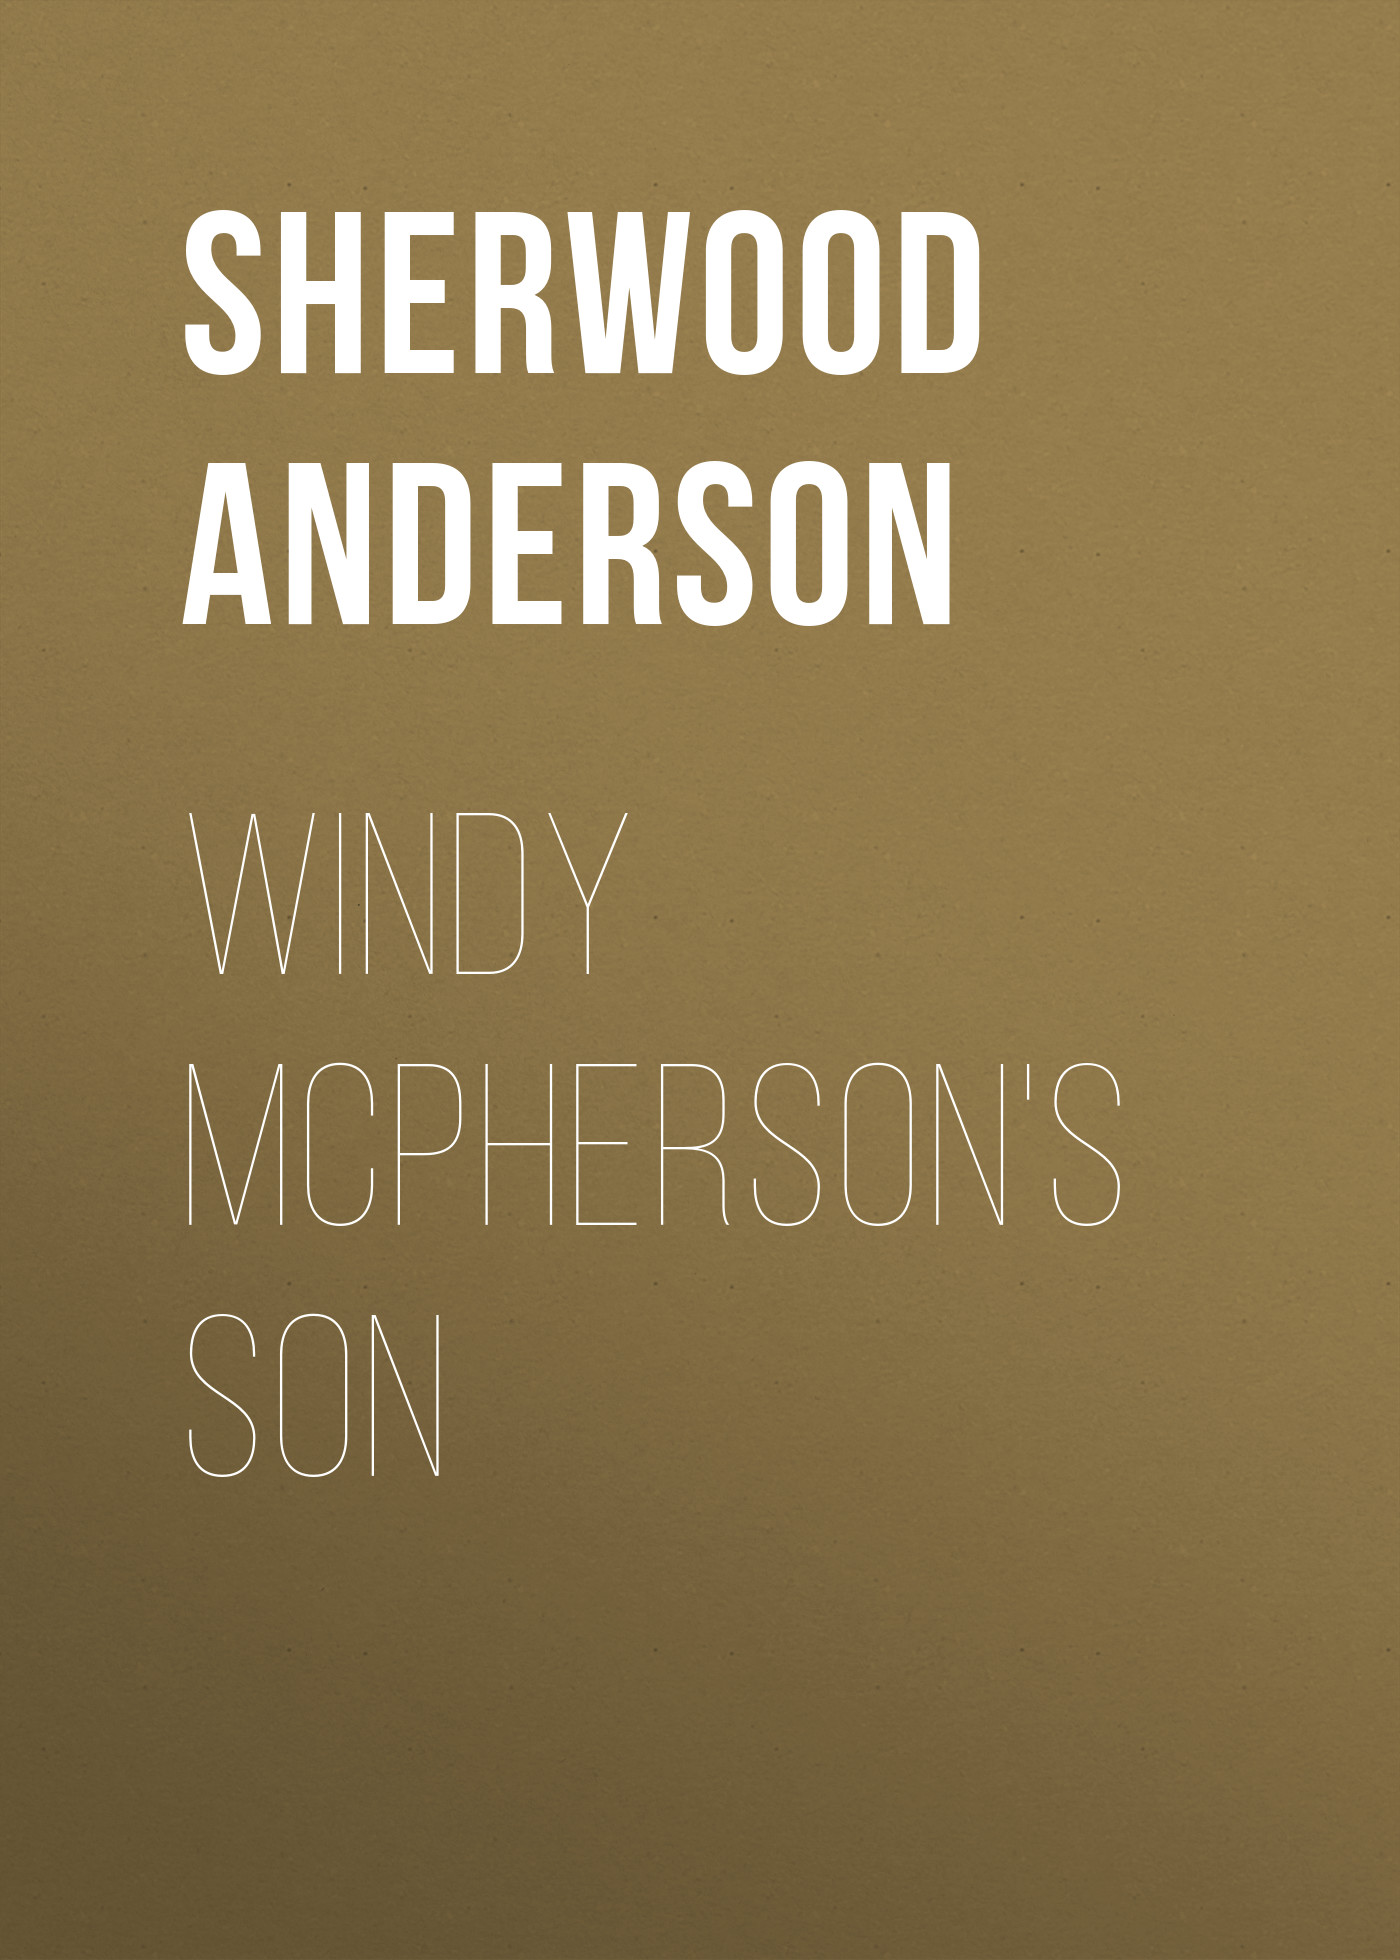 Книга Windy McPherson's Son из серии , созданная Sherwood Anderson, может относится к жанру Зарубежная классика, Литература 20 века, Зарубежная старинная литература. Стоимость электронной книги Windy McPherson's Son с идентификатором 36094277 составляет 0 руб.